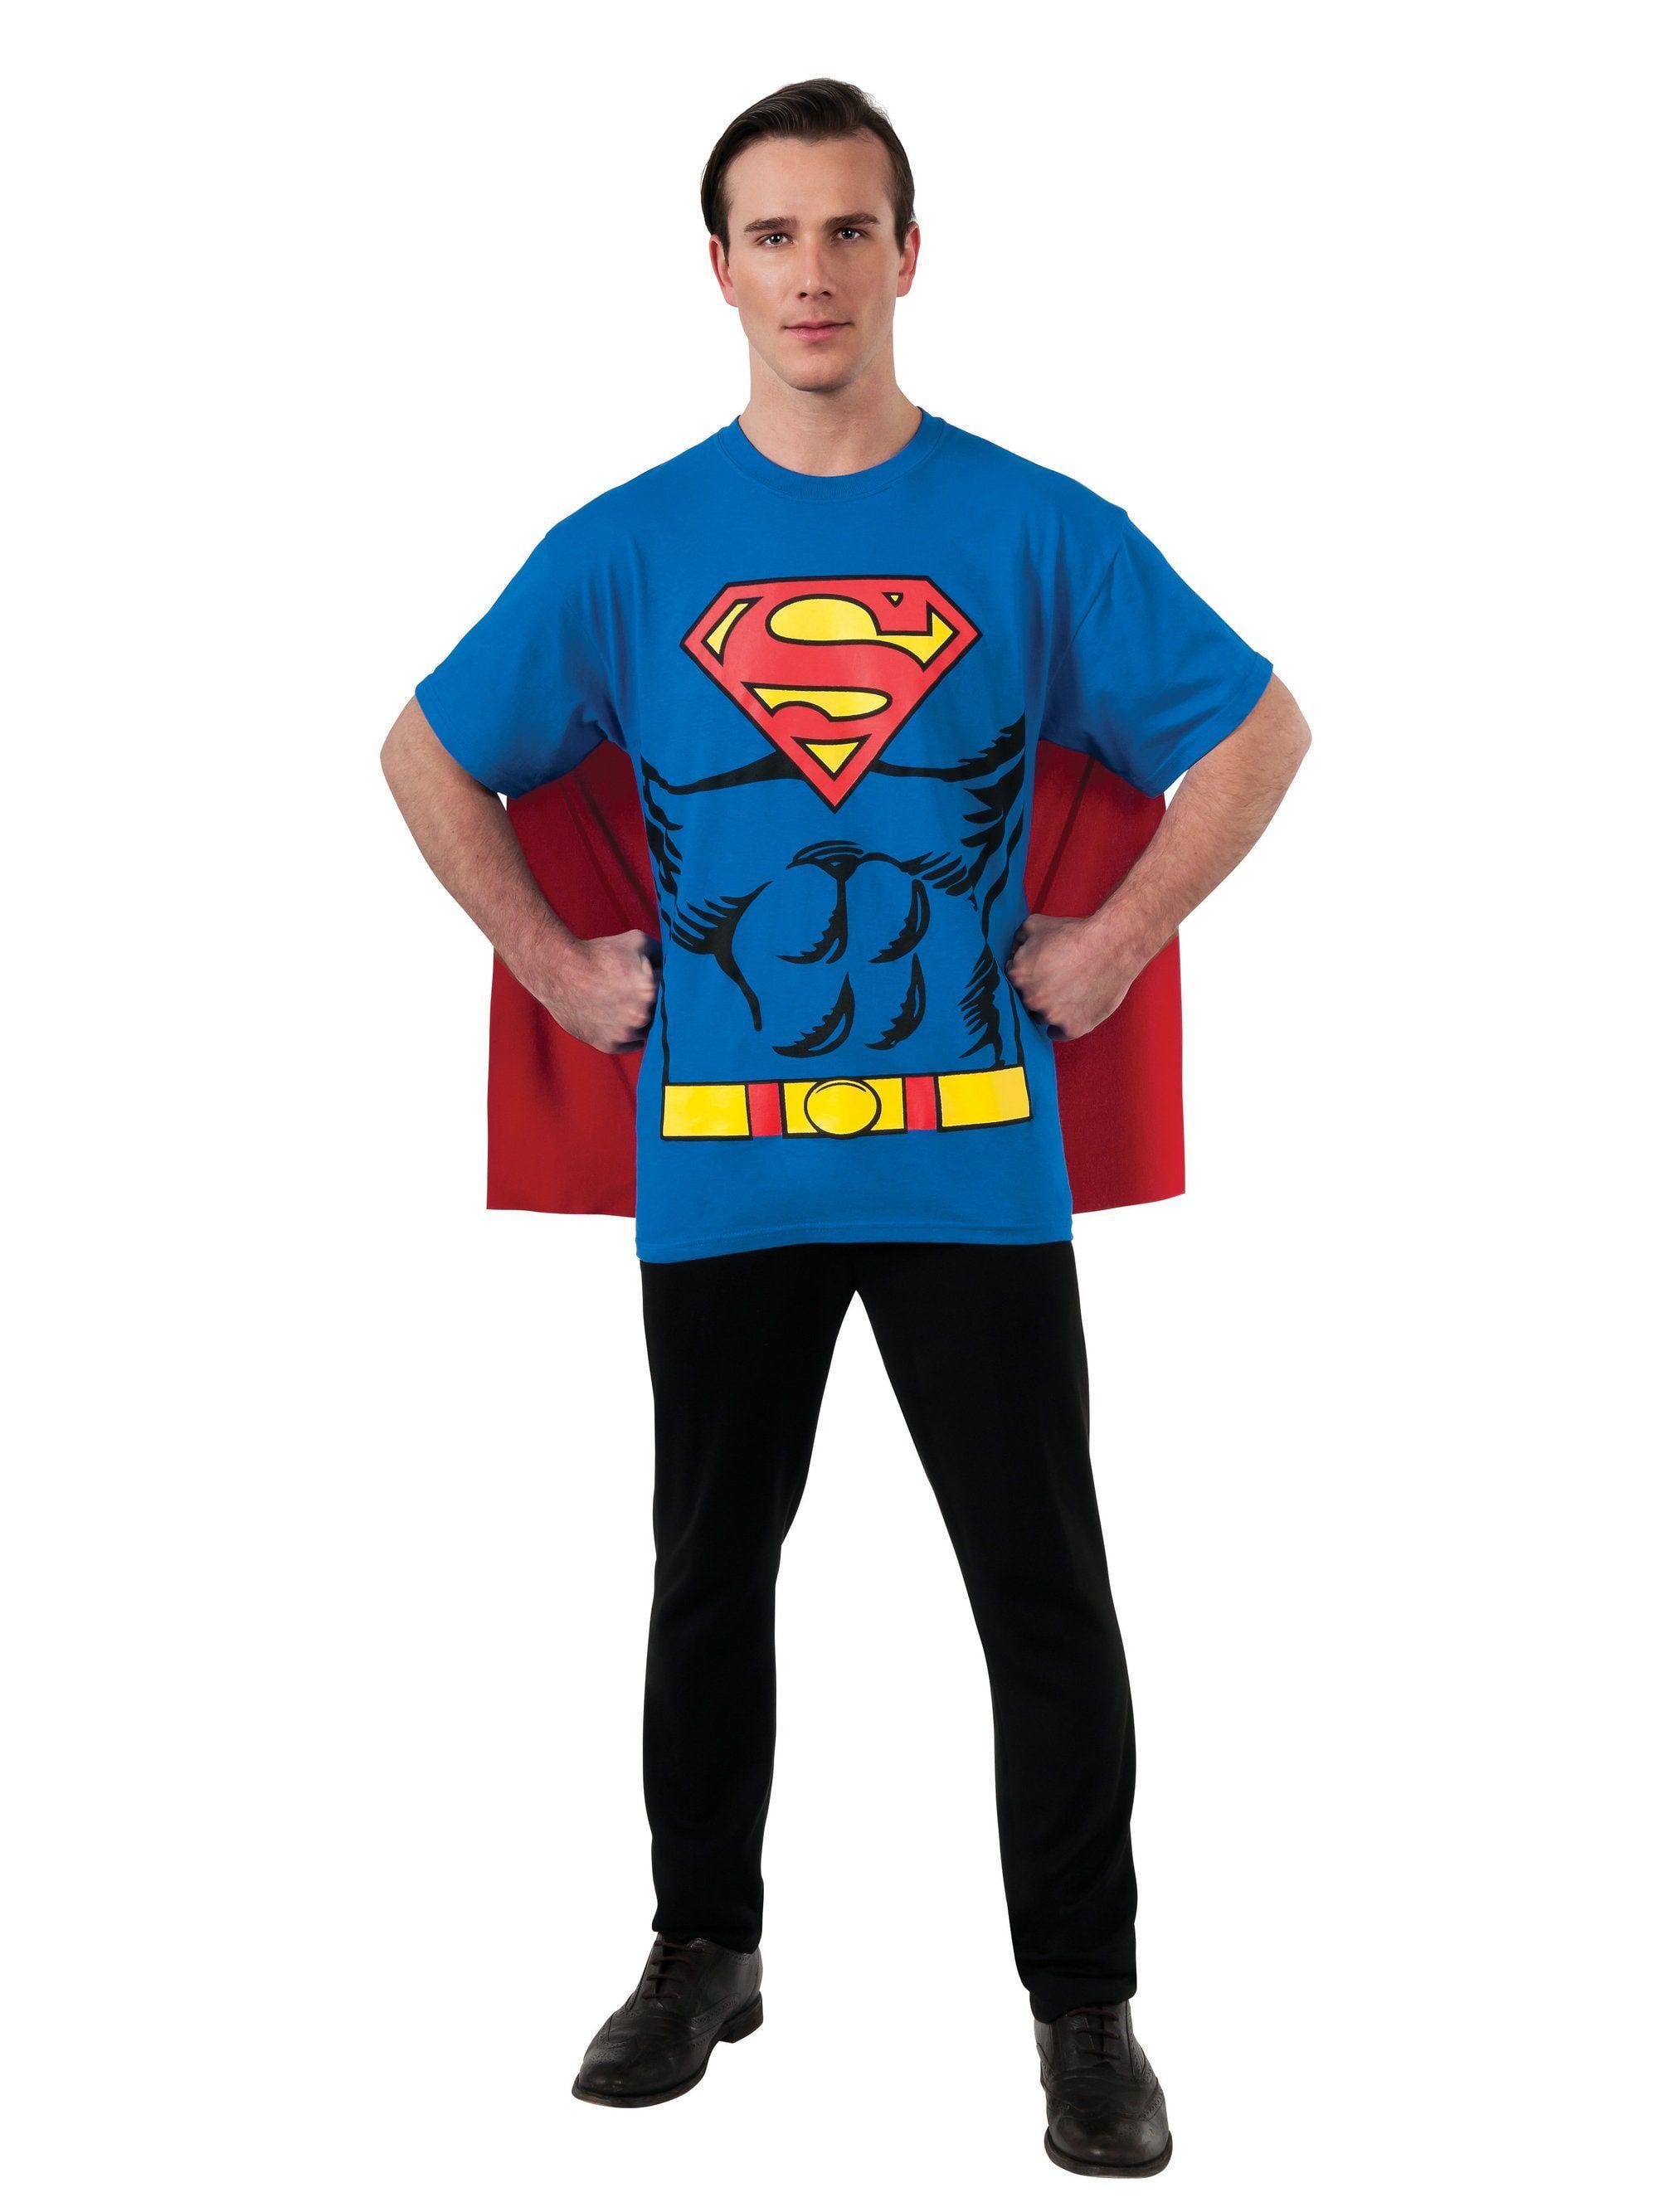 Halloween Superman Logo - Superman T Shirt Costume Kit For Men Costumes For 2018